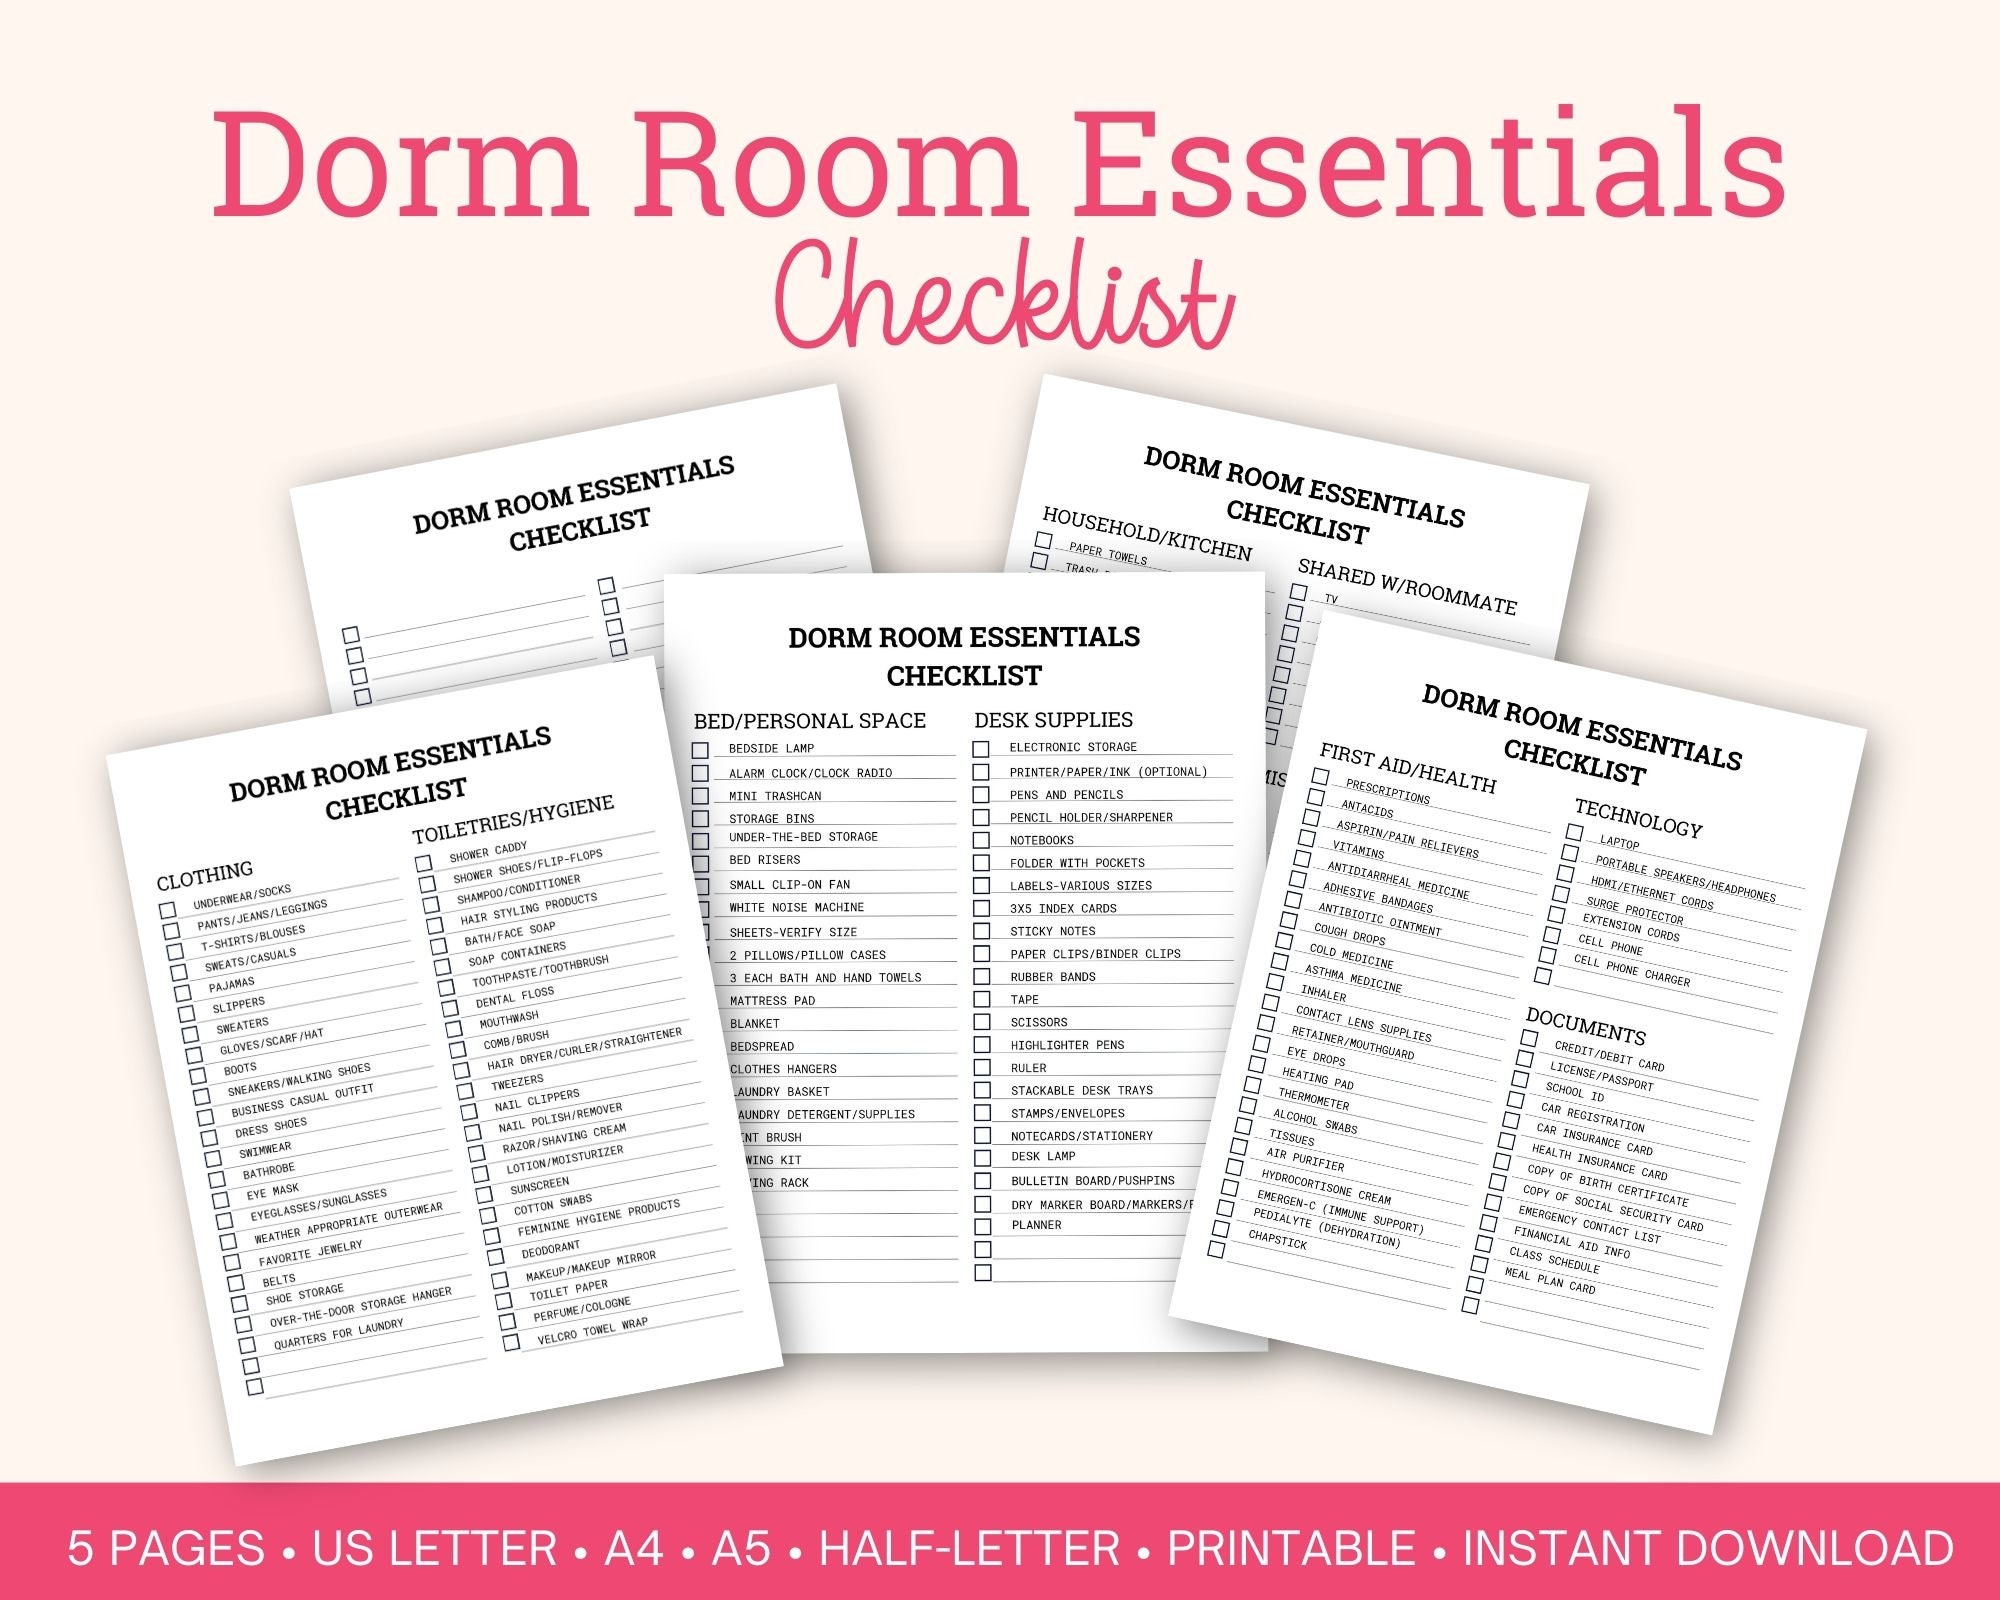 College Dorm Essentials Checklist